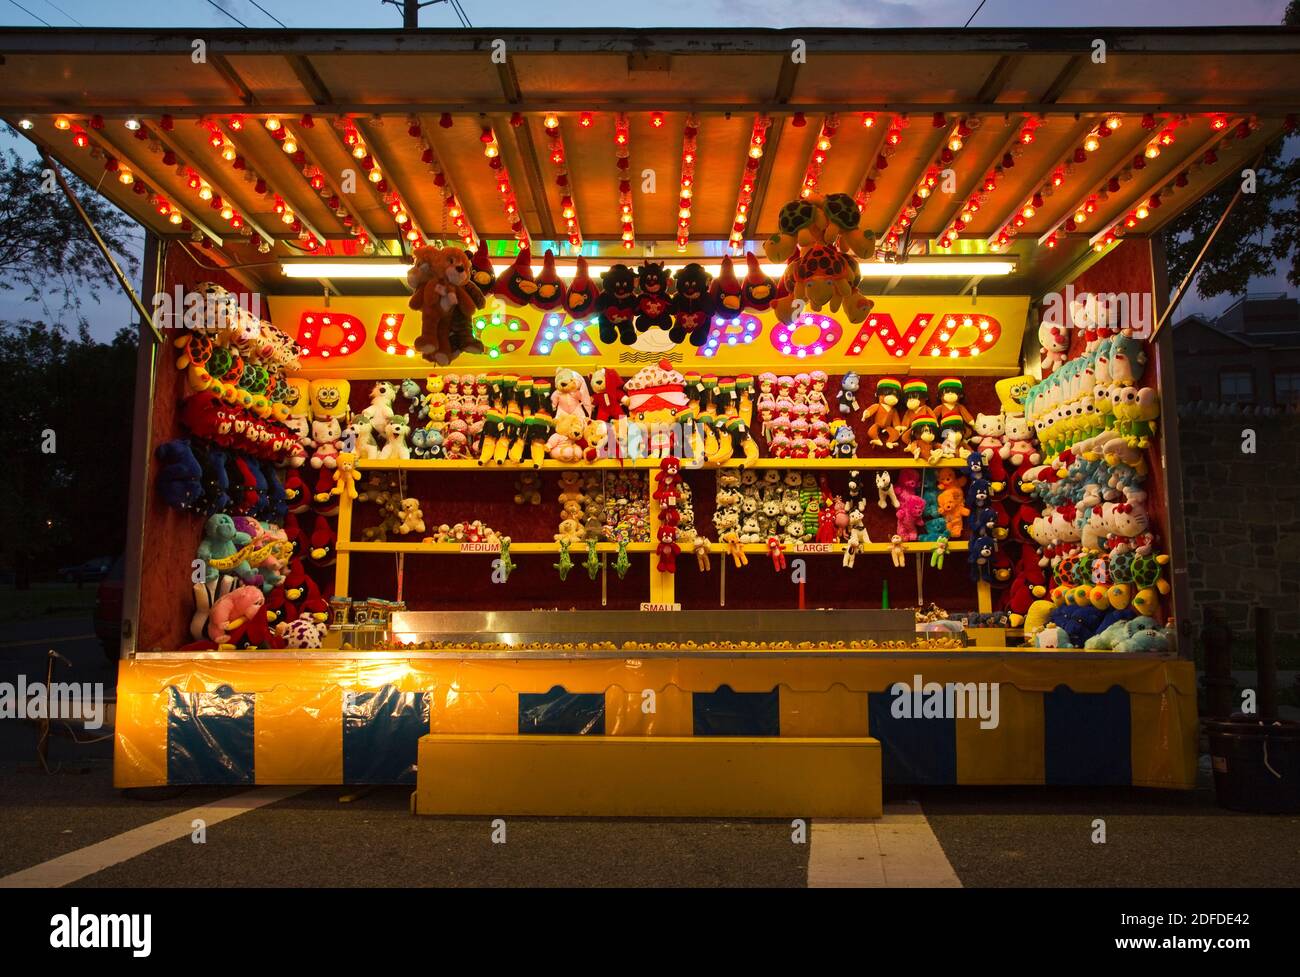 Calle Carnival kiosco / stand con animales de peluche (Noche con luces brillantes) Foto de stock